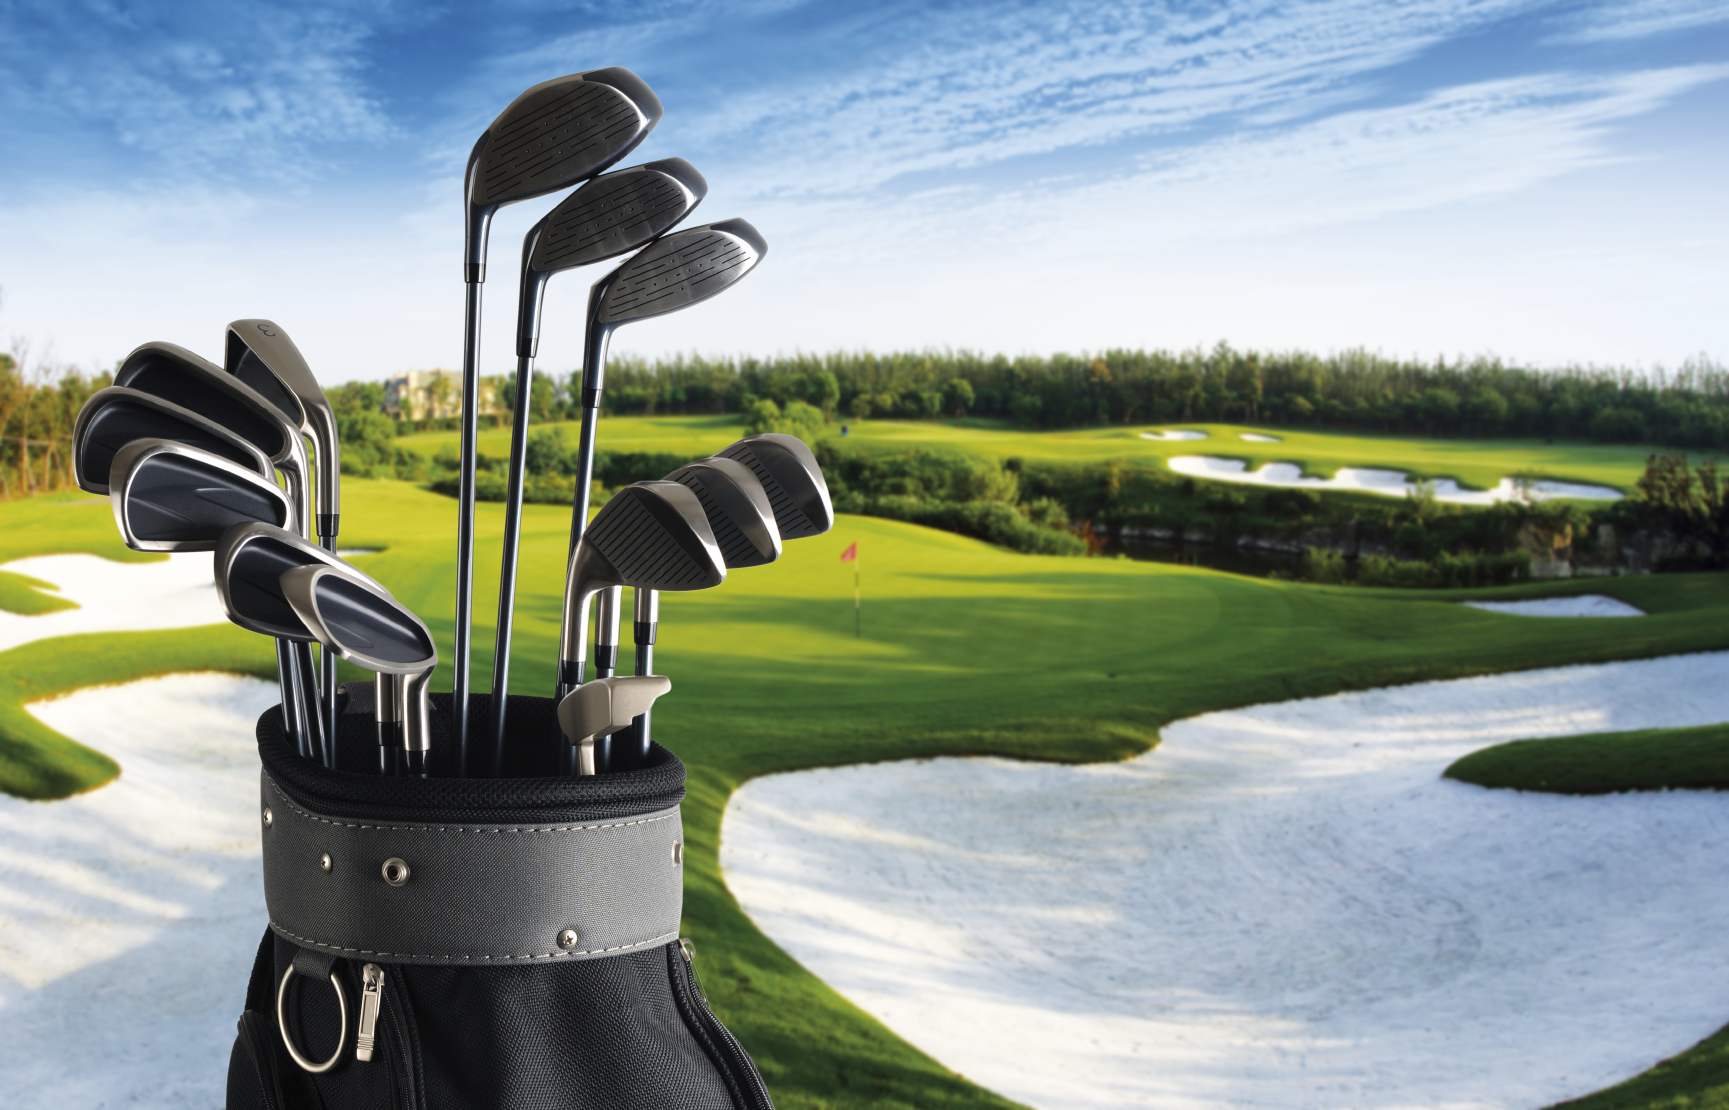 Voorzichtig Welkom formaat 5 Best Websites to Buy Discount Golf Equipment - The Golf Travel Guru